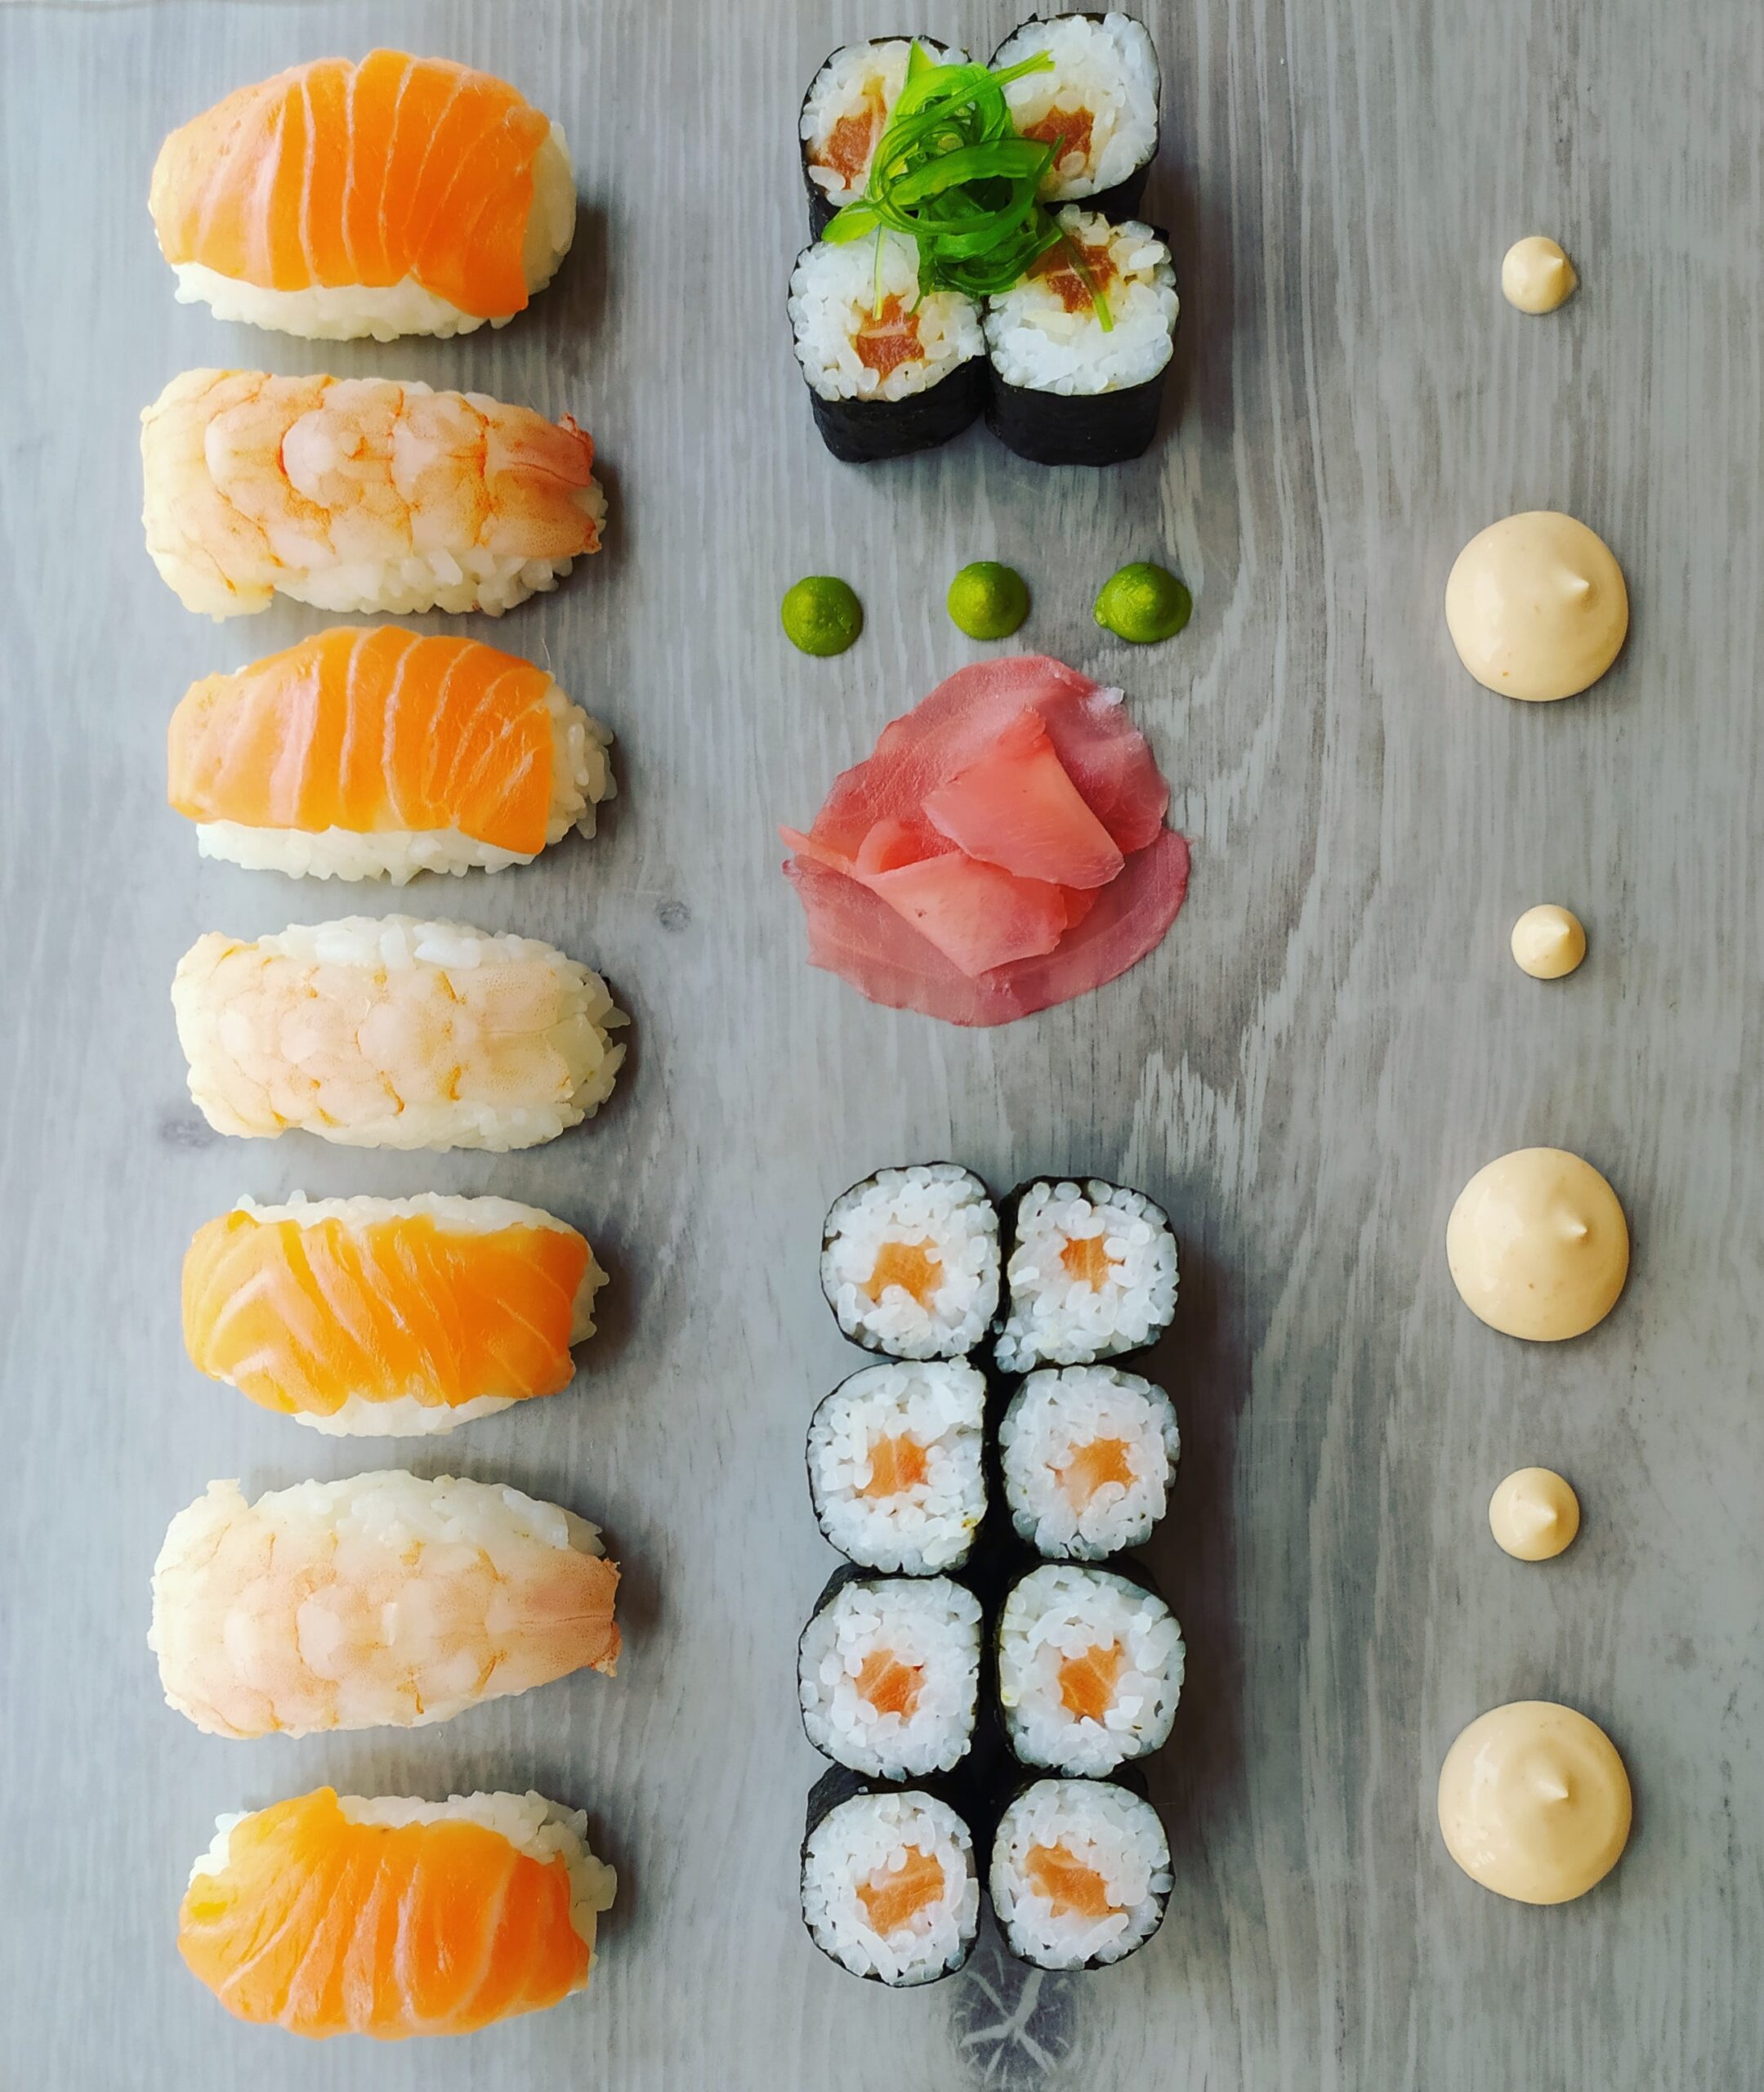 Tabla de maki / sushi